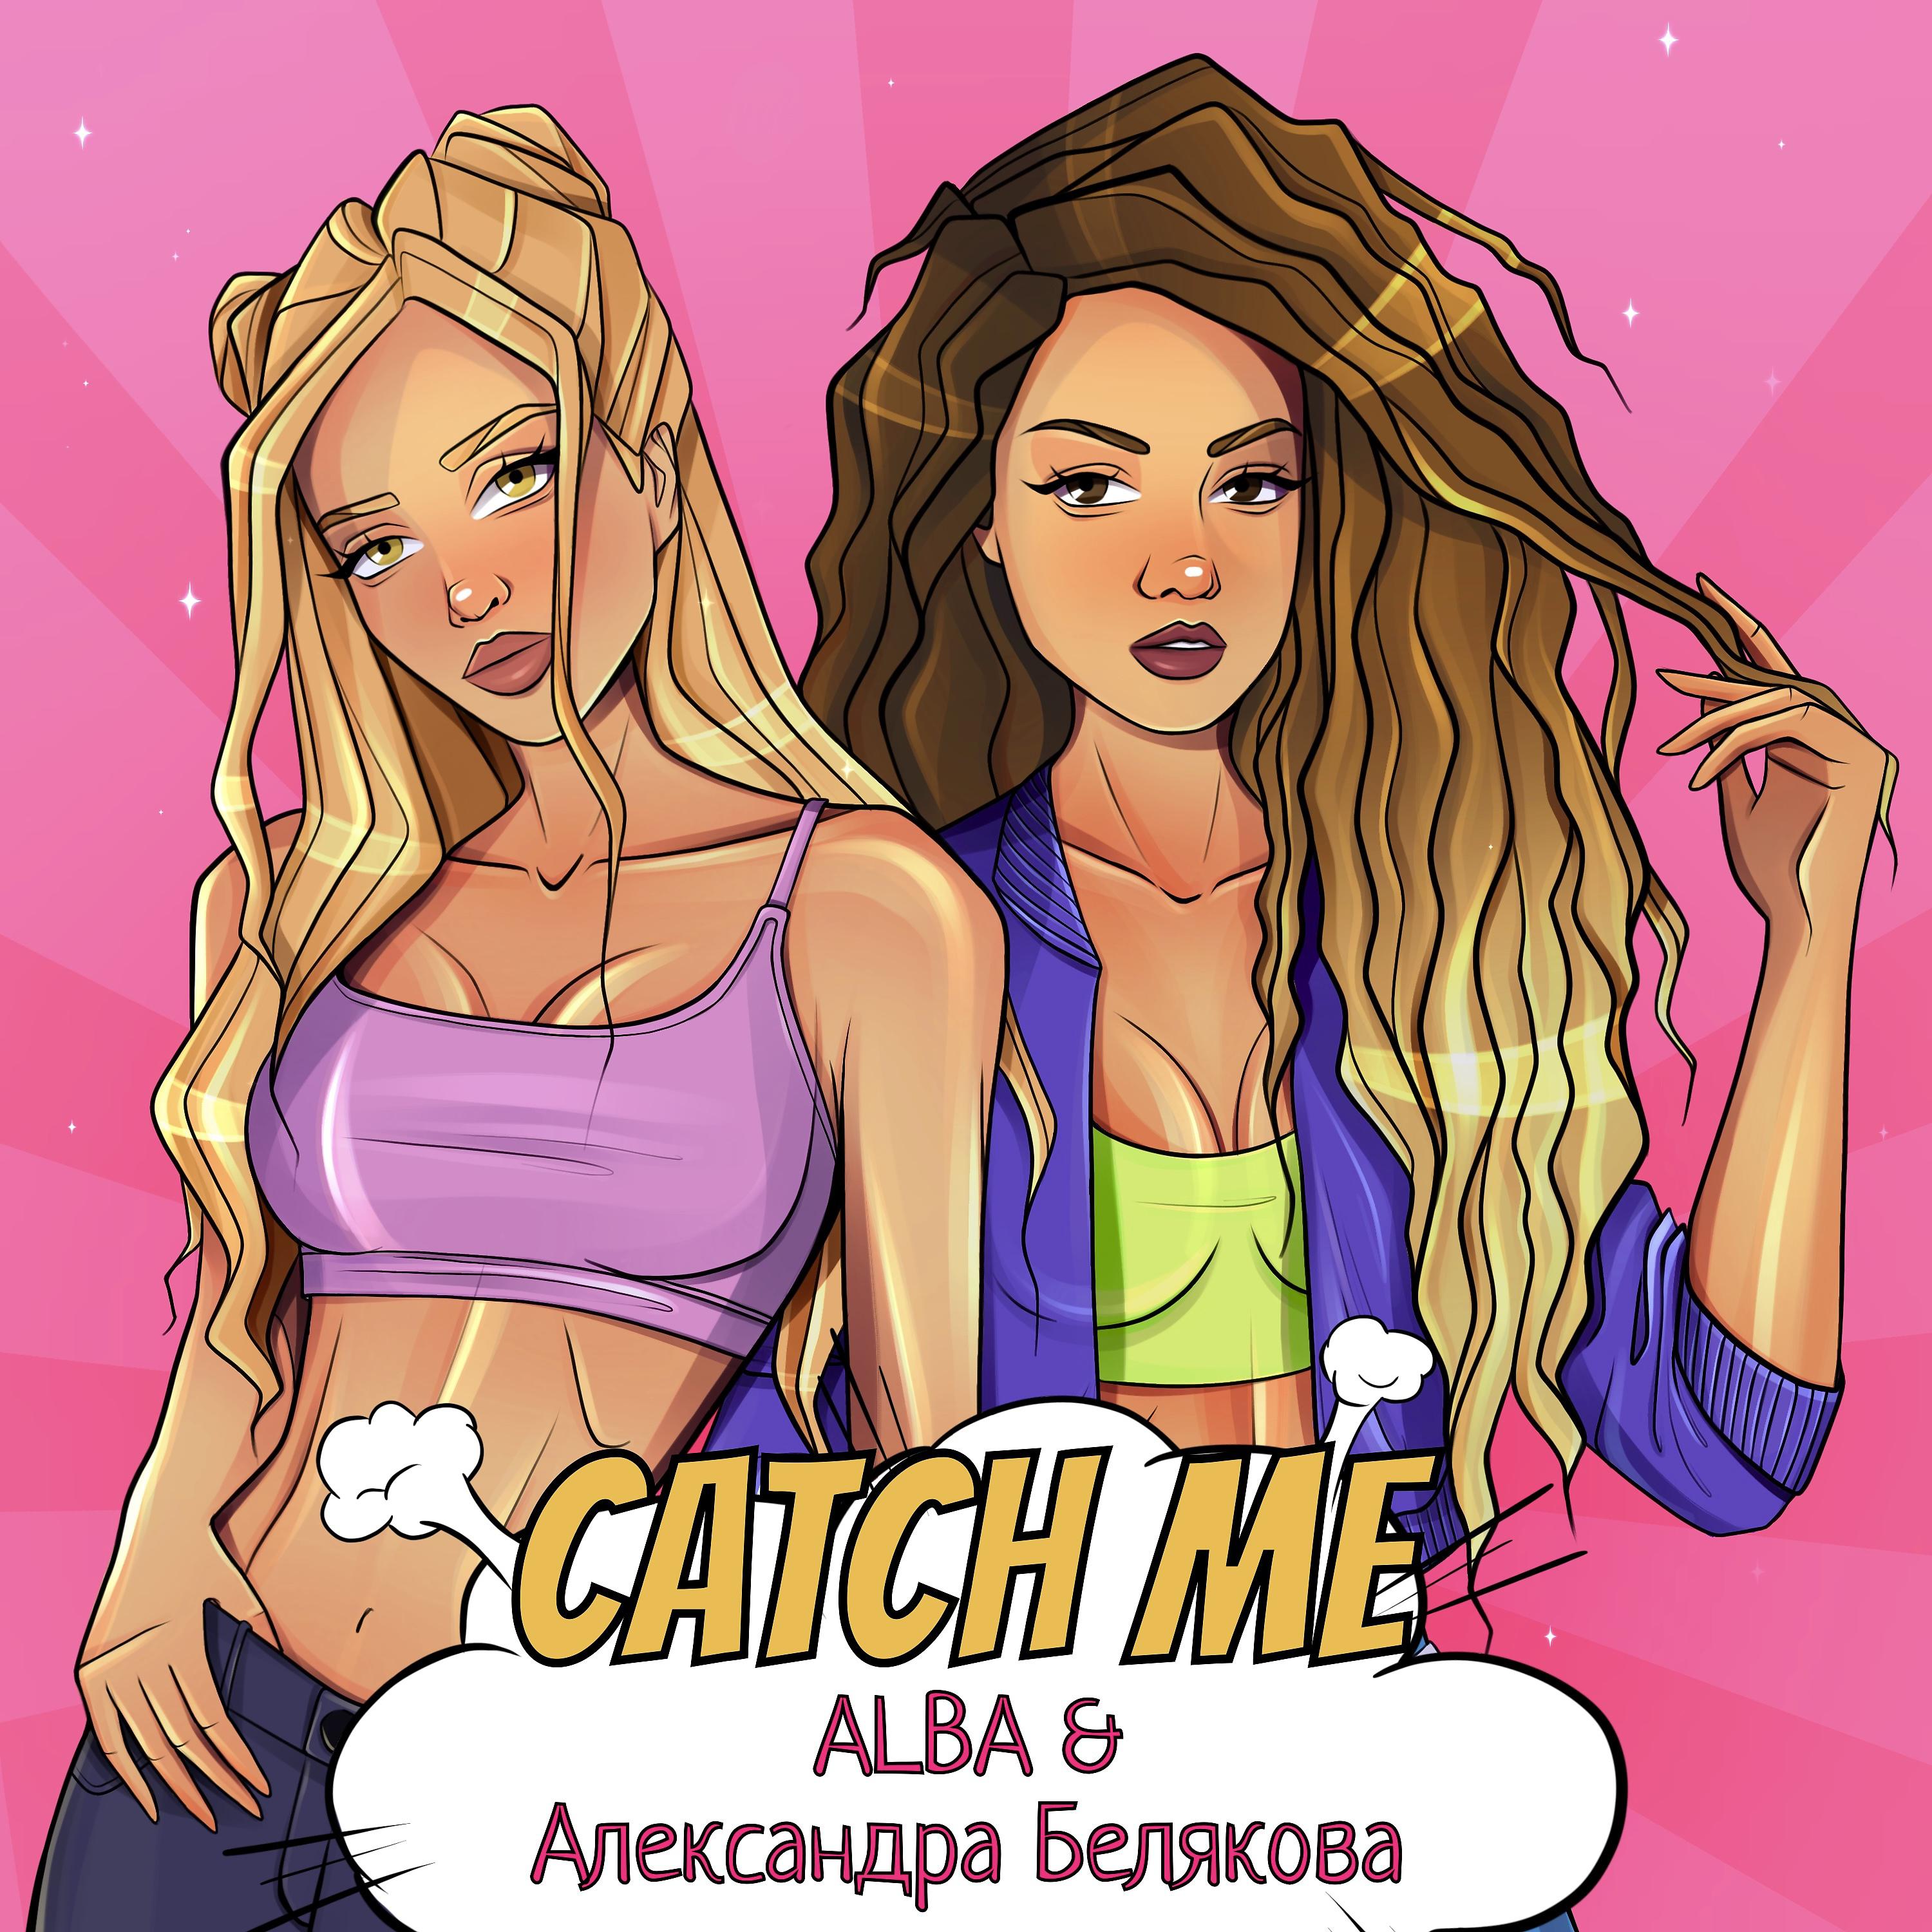 Alba, Александра Белякова - Catch Me